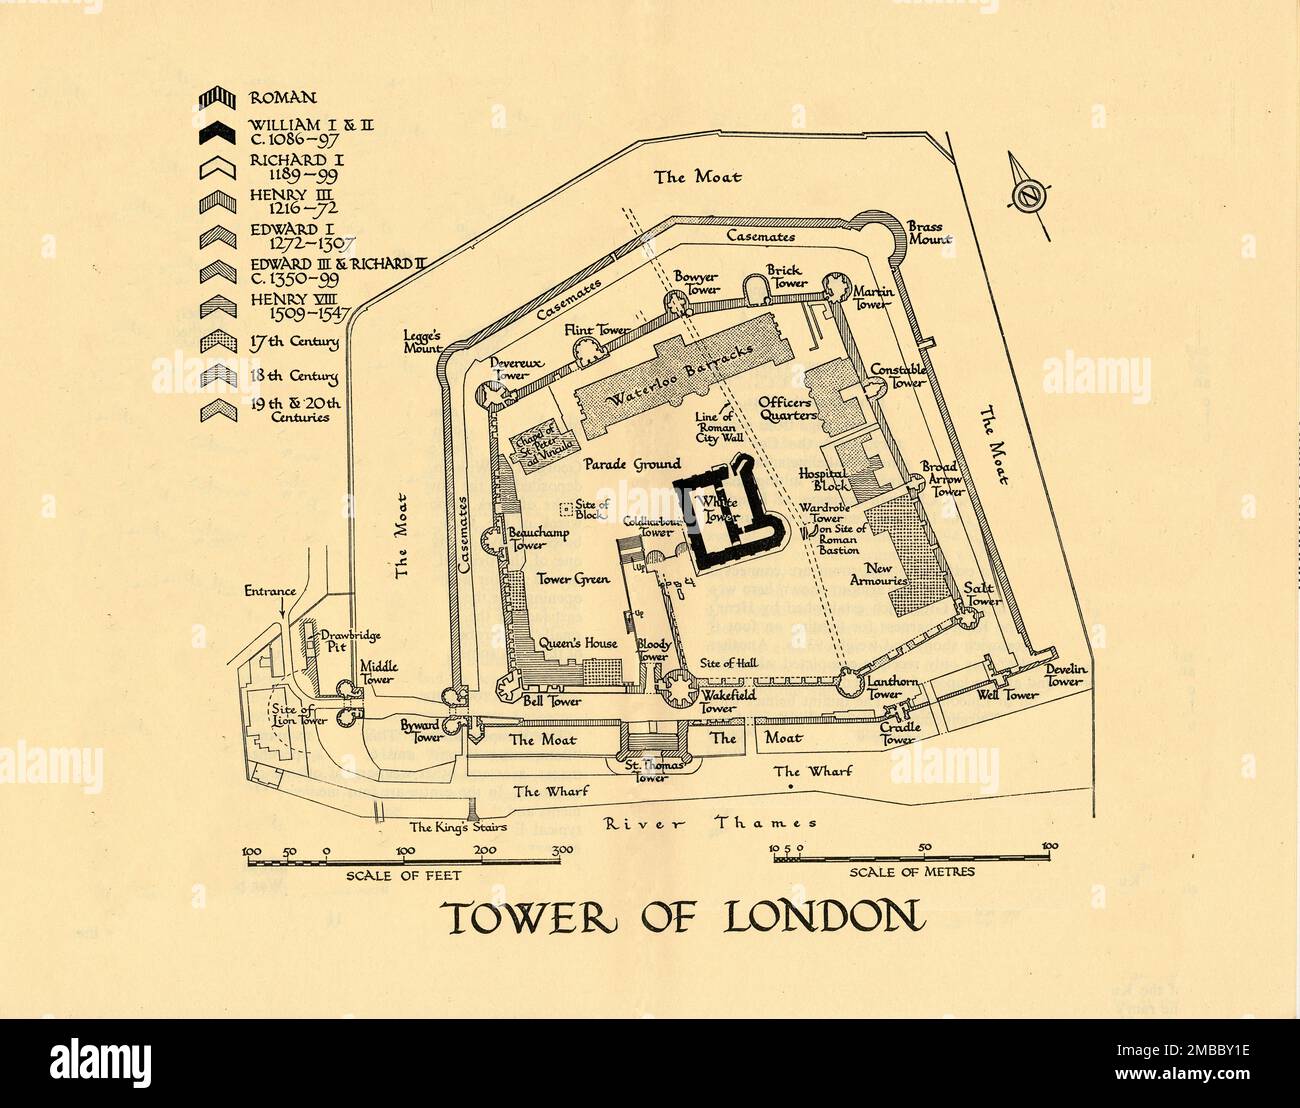 "Tower of London", 1961. Grundriss des Tower of London, mit Schlüsselangabe für die Gebäudezeiträume: 'Roman; William I &amp; II, c.1086-97; Richard I, 1189-99; Henry III., 1216-72; Edward I, 1272-1307; Edward III &amp; Richard II, c1350-99; Henry VIII, 1509-1547; 17. Century; 18. Century; 19. &amp; 20. Centuries'. Die Themse ist unten. Zu den illustrierten Merkmalen gehören die Anlegestelle, die Königstreppe, der Graben, der Paradeplatz, der „Ort des Blocks“ (für Enthauptungen), das Queen's House, Tower Green, Waterloo Barracks, die Kapelle von St. Peter ad Vincula, neue Waffenlager, Krankenhausblock, Offiziersquartiere, Linie o Stockfoto